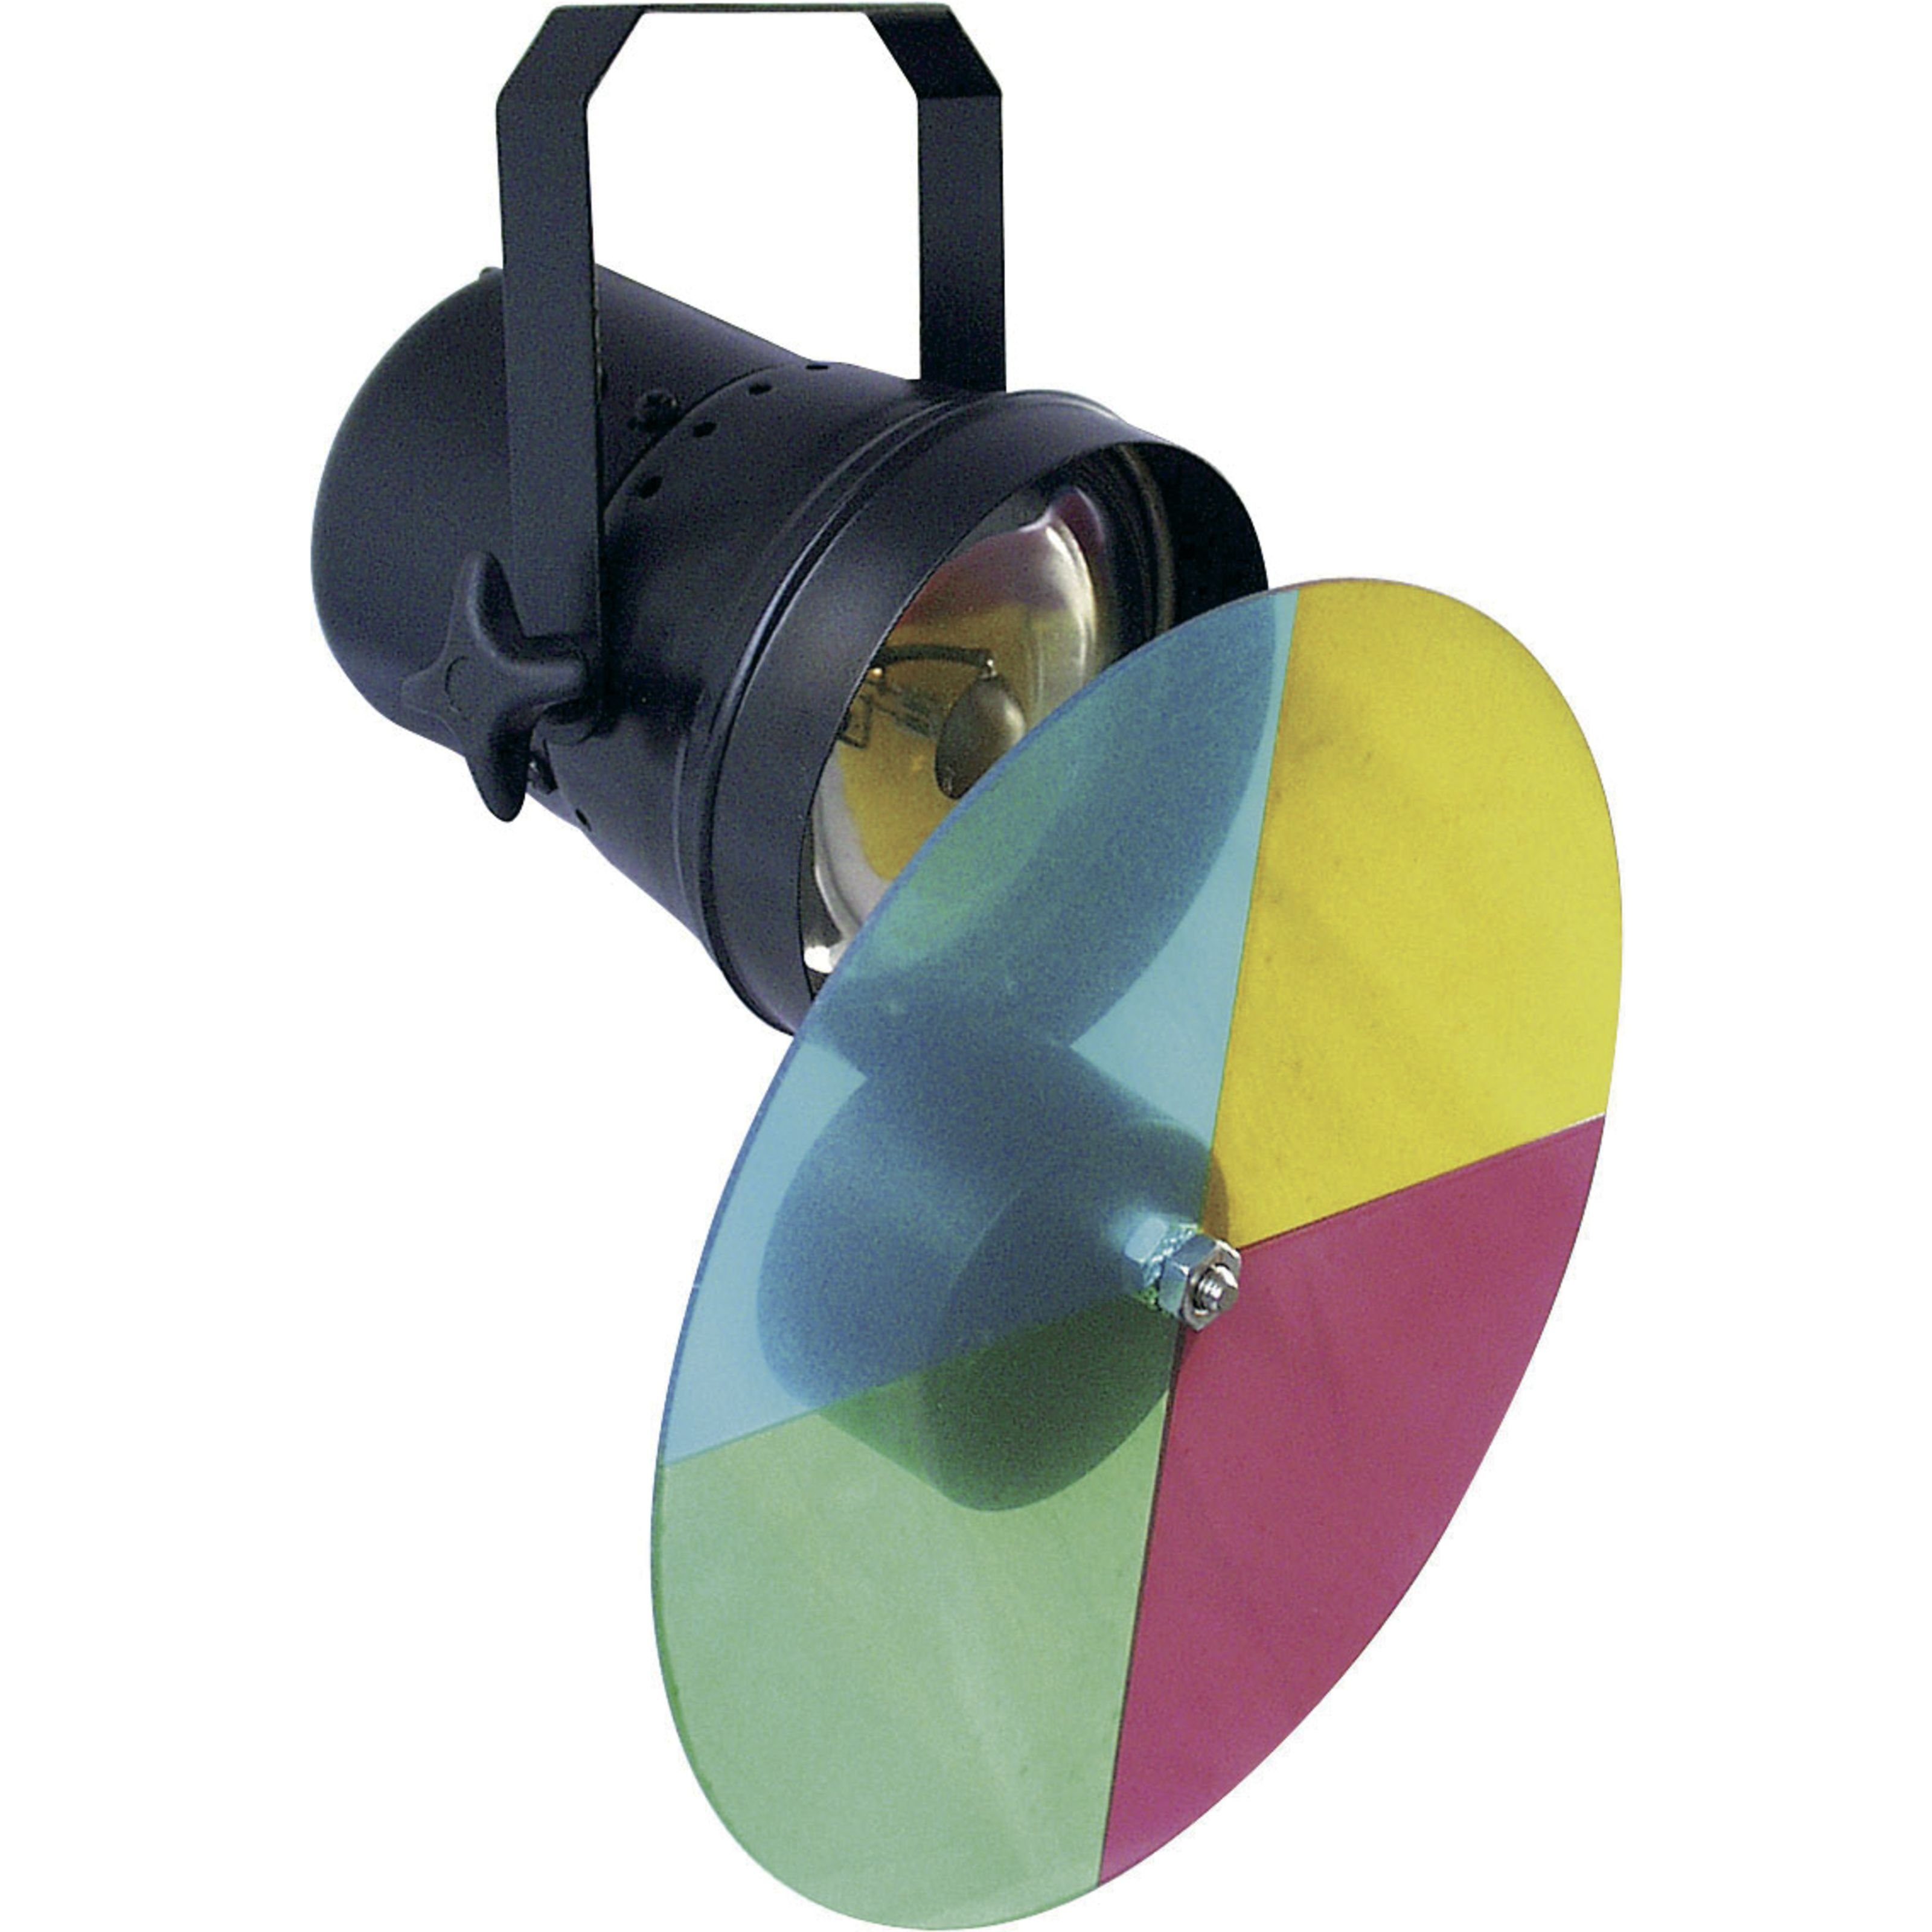 lightmaXX Discolicht, Mirrorball Set Motor, Set Farbwechsler / Lichtefekte 20cm - Pinspot, 1